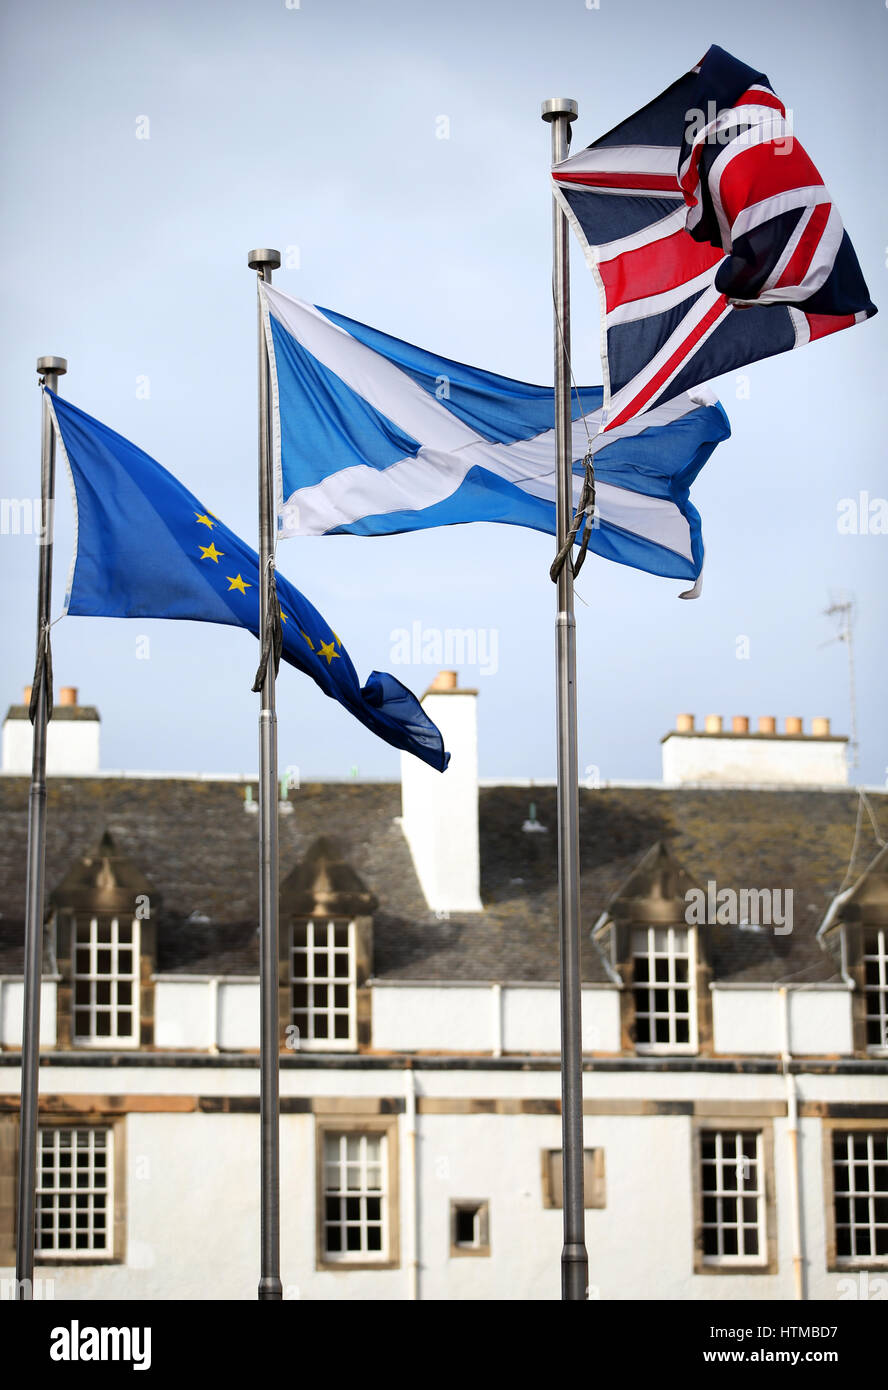 Un Union Jack, sautoir et voler à l'extérieur du pavillon européen Parlement écossais, Edimbourg. Banque D'Images